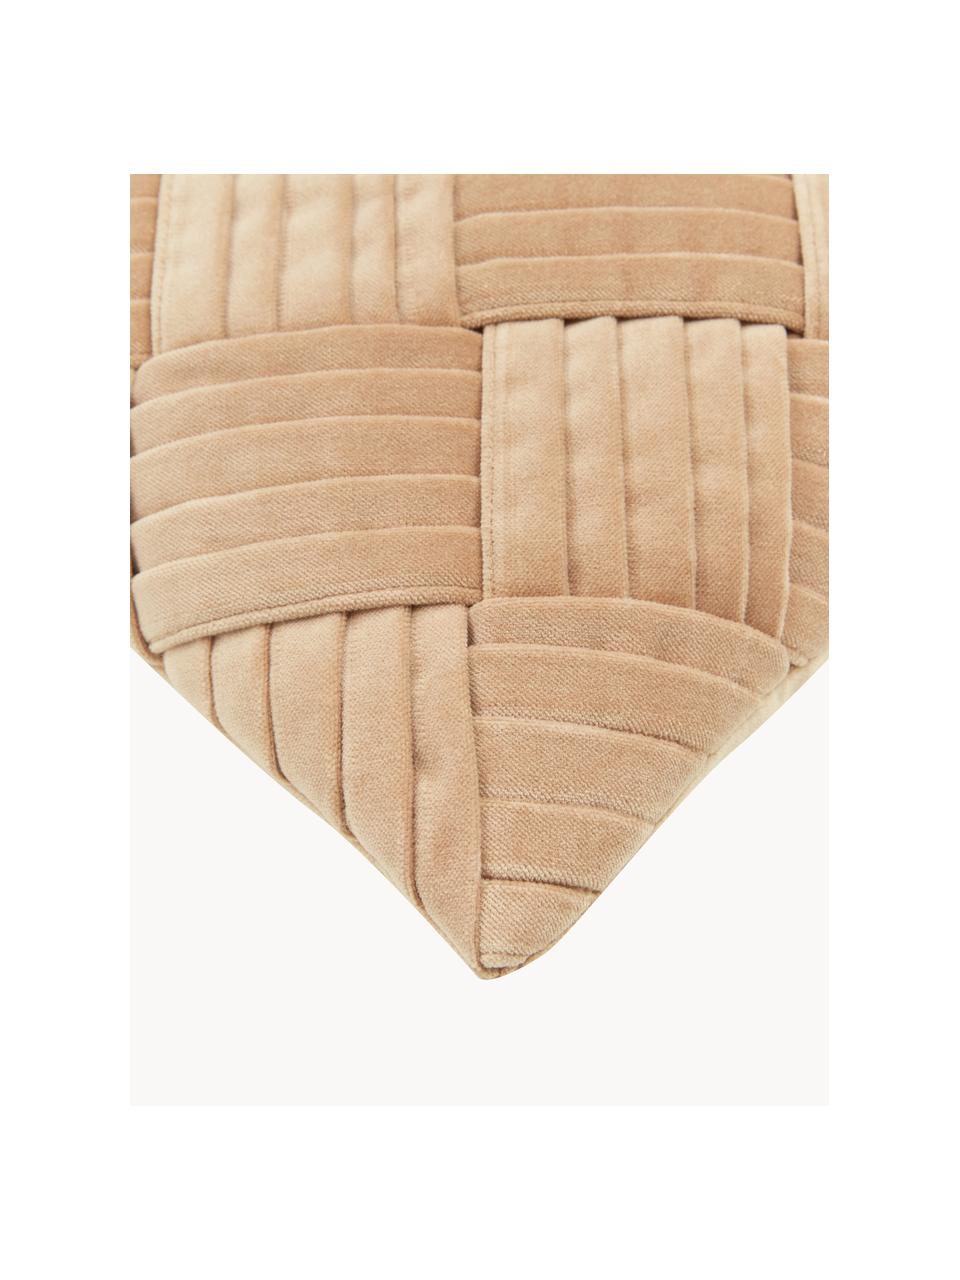 Fluwelen kussenhoes Sina met structuurpatroon, Fluweel (100% katoen), Okergeel, B 30 x L 50 cm